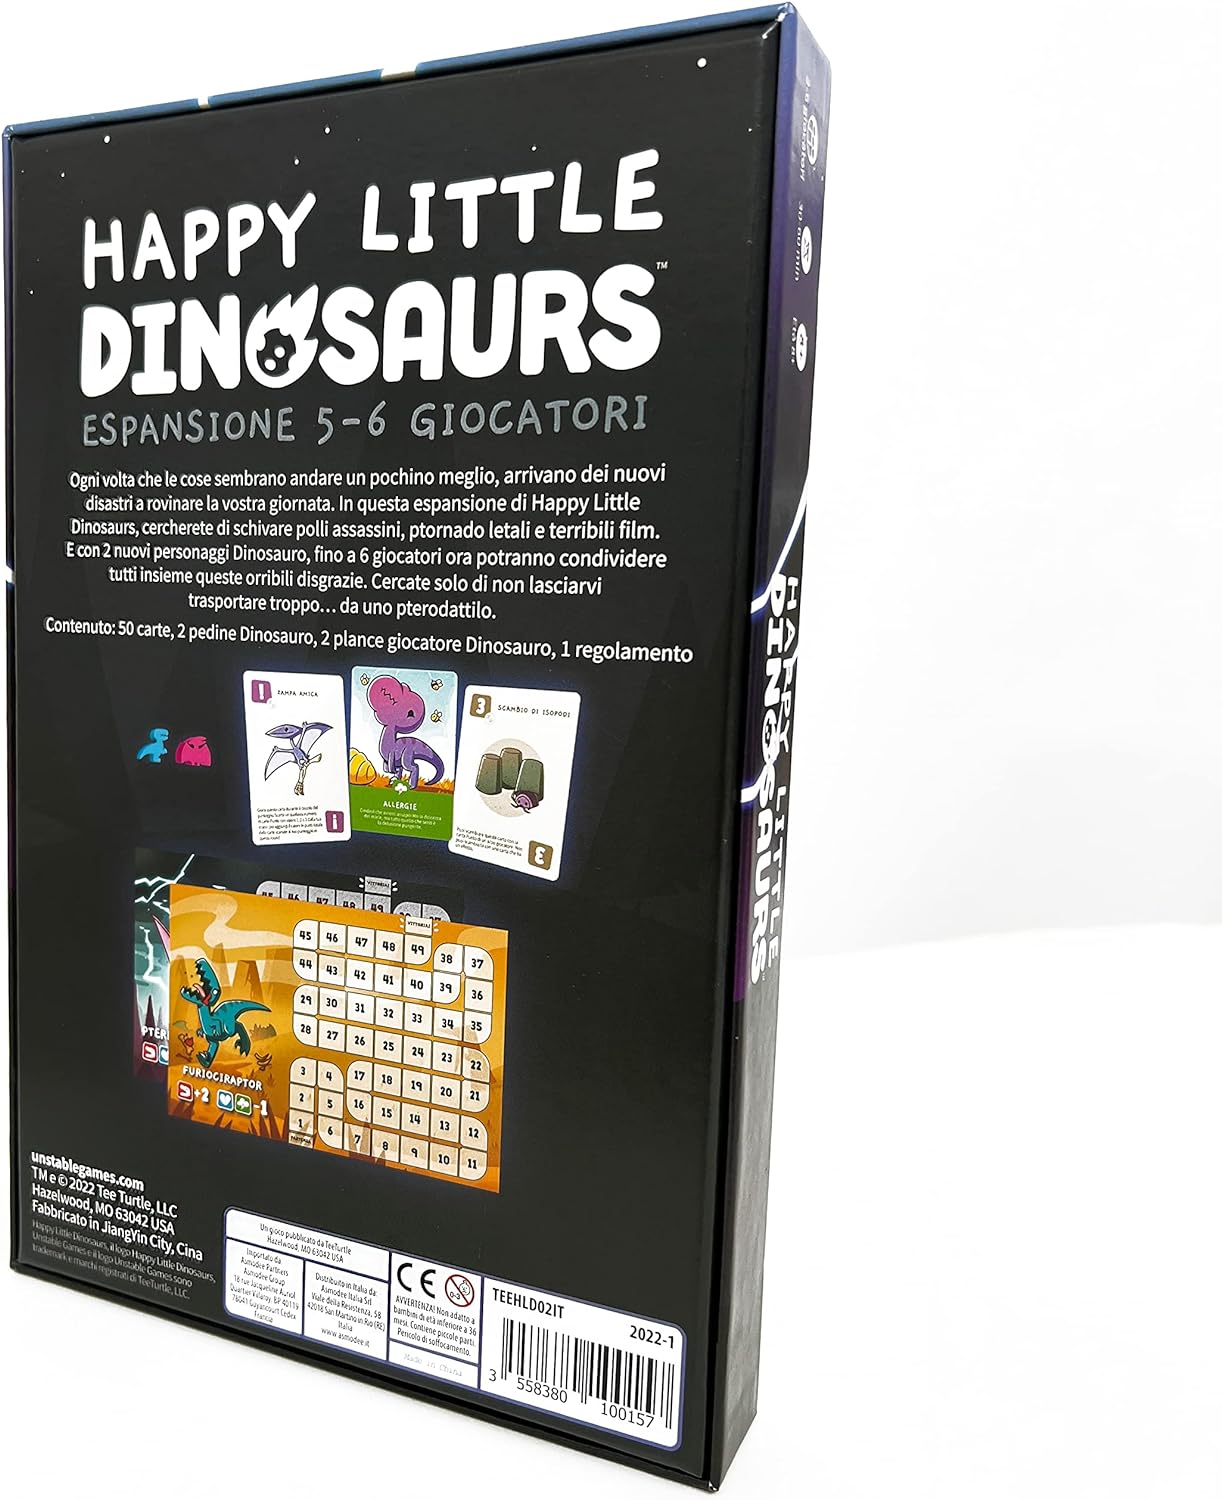 Happy Little Dinosaurs - Espansione 5-6 Giocatori